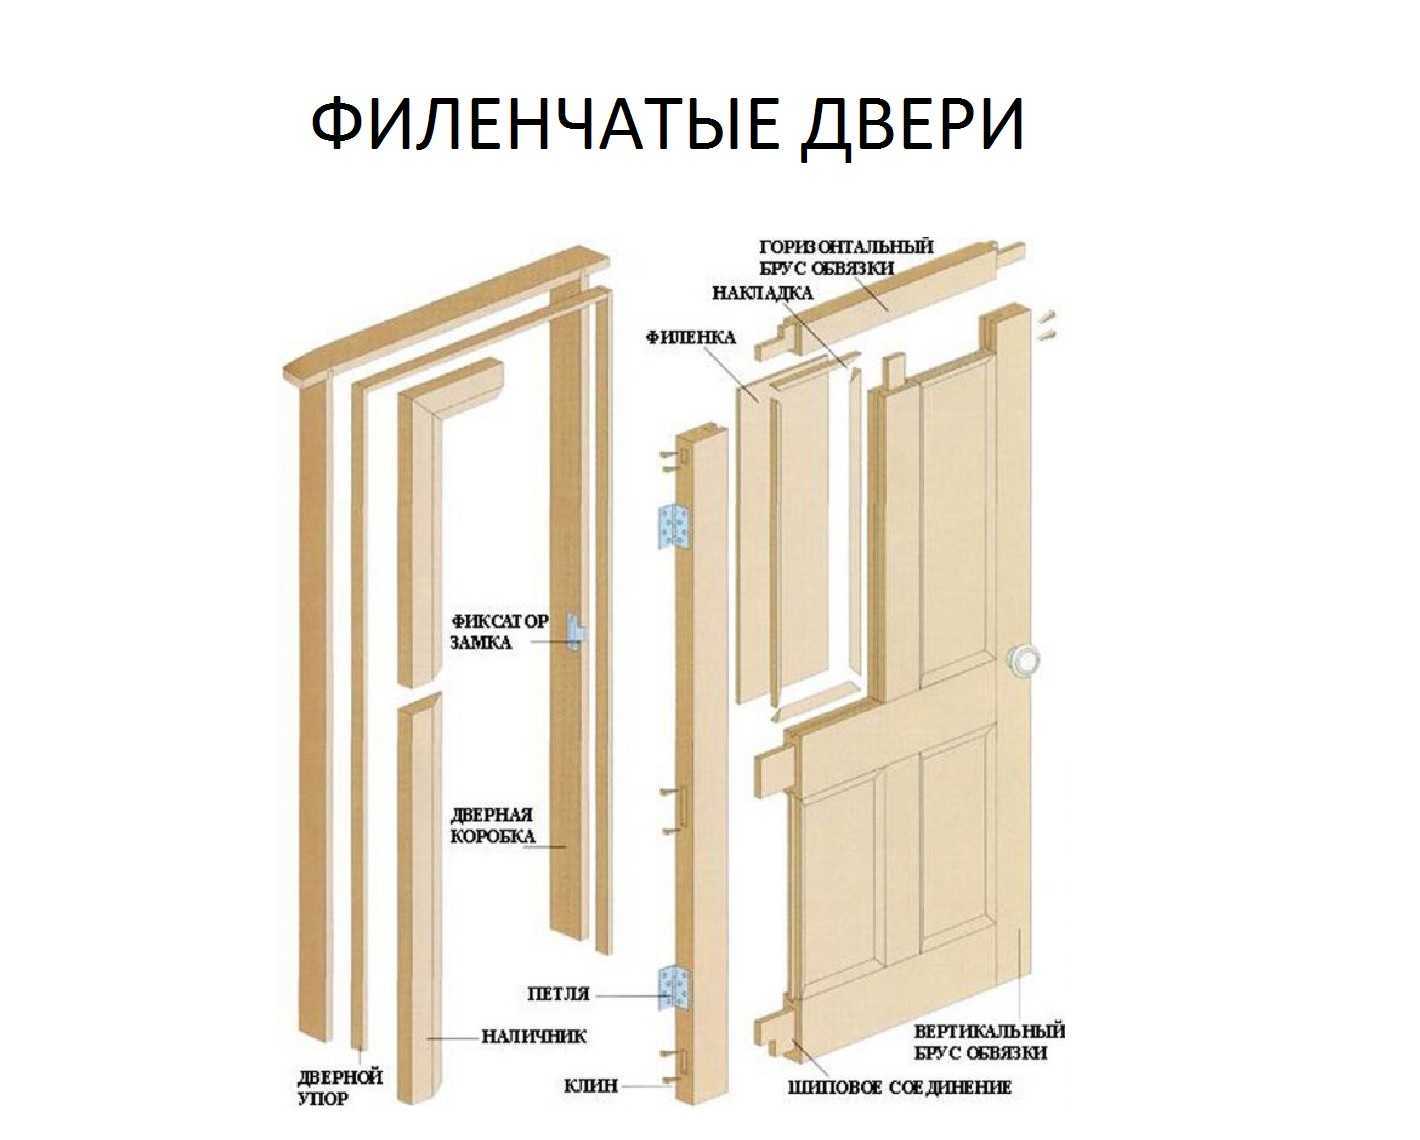 Филенчатые двери своими руками - строительство и ремонт